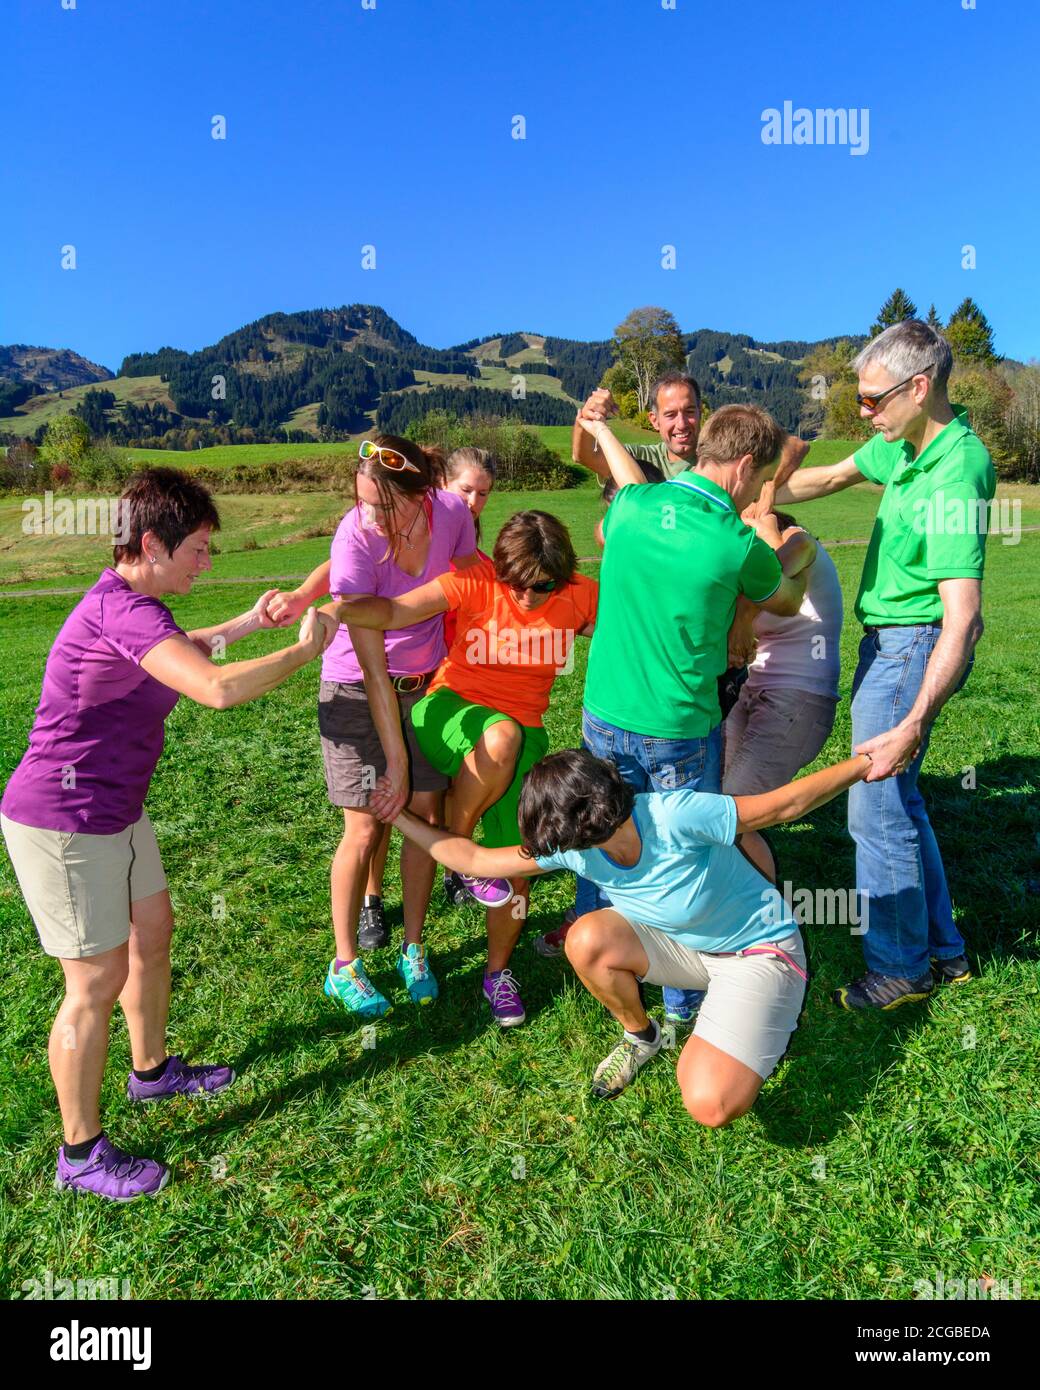 Eine Gruppe bei einer Teambuilding-Übung - das Zusammenspiel im Team bringt letztlich den Erfolg, auch und vor allem beim Lösen schwieriger Aufgaben - Stock Photo